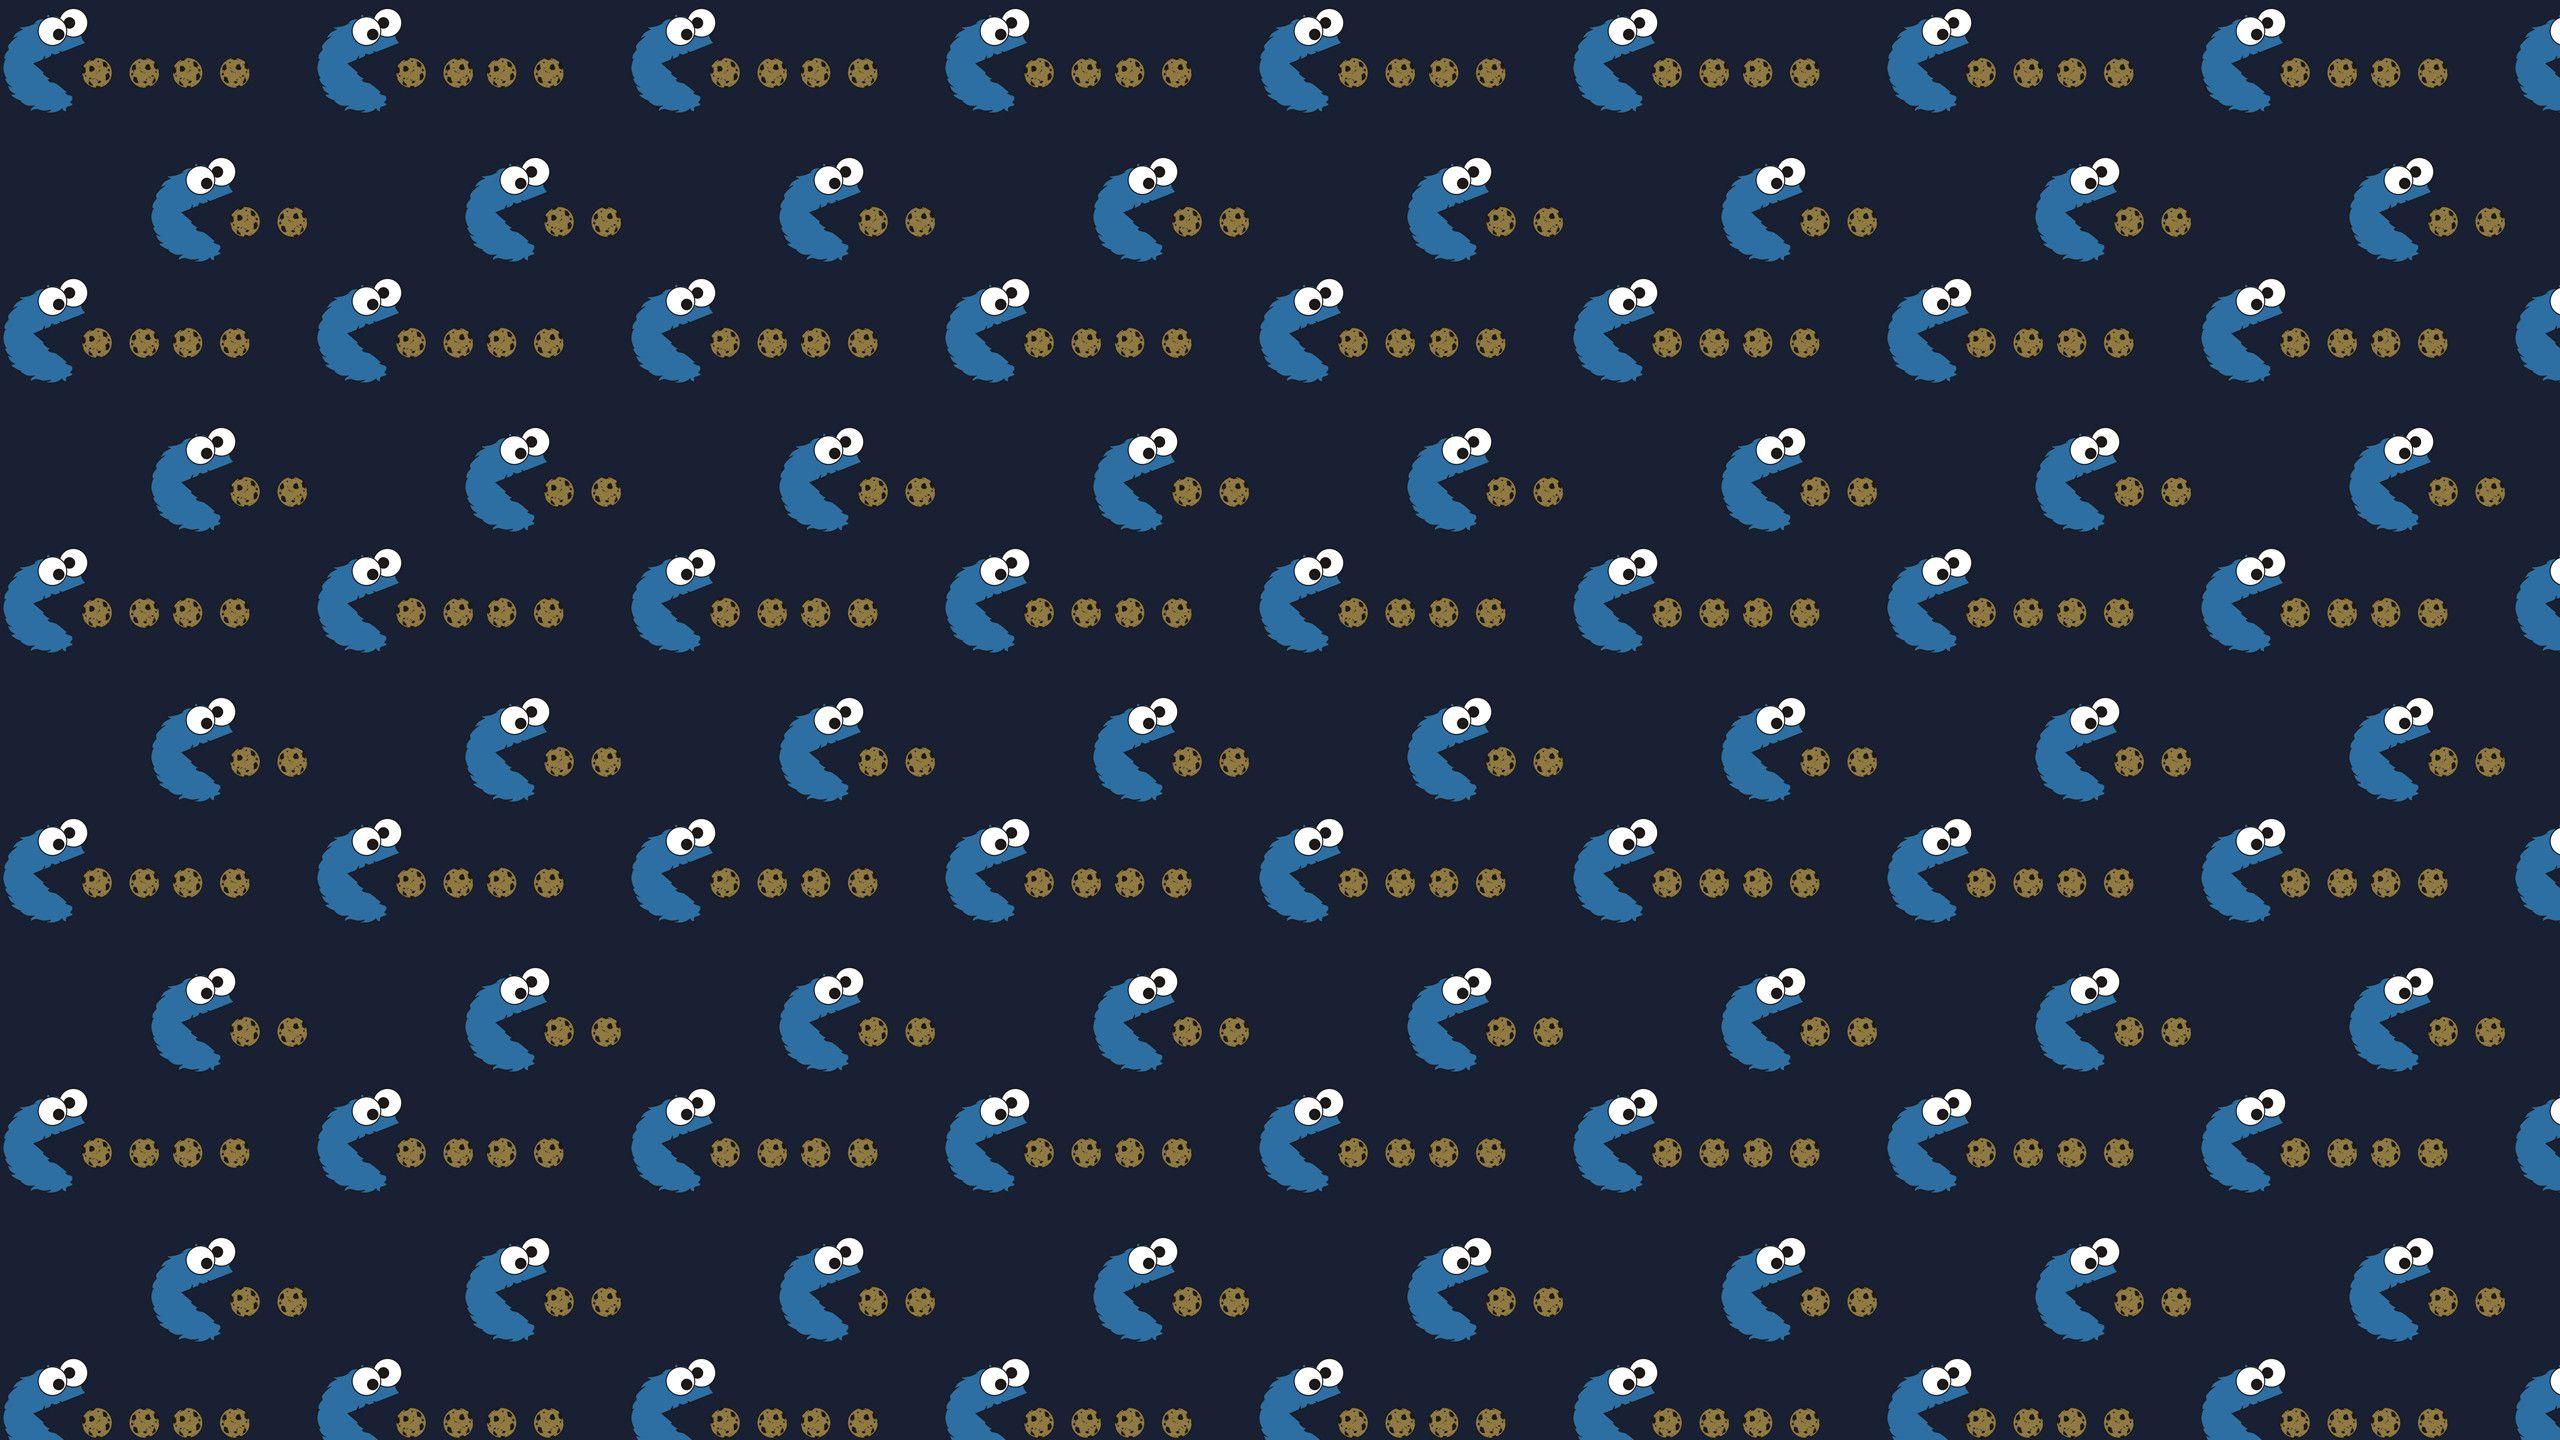 Cookie Monster wallpaper by EvilJoker  Download on ZEDGE  28b5